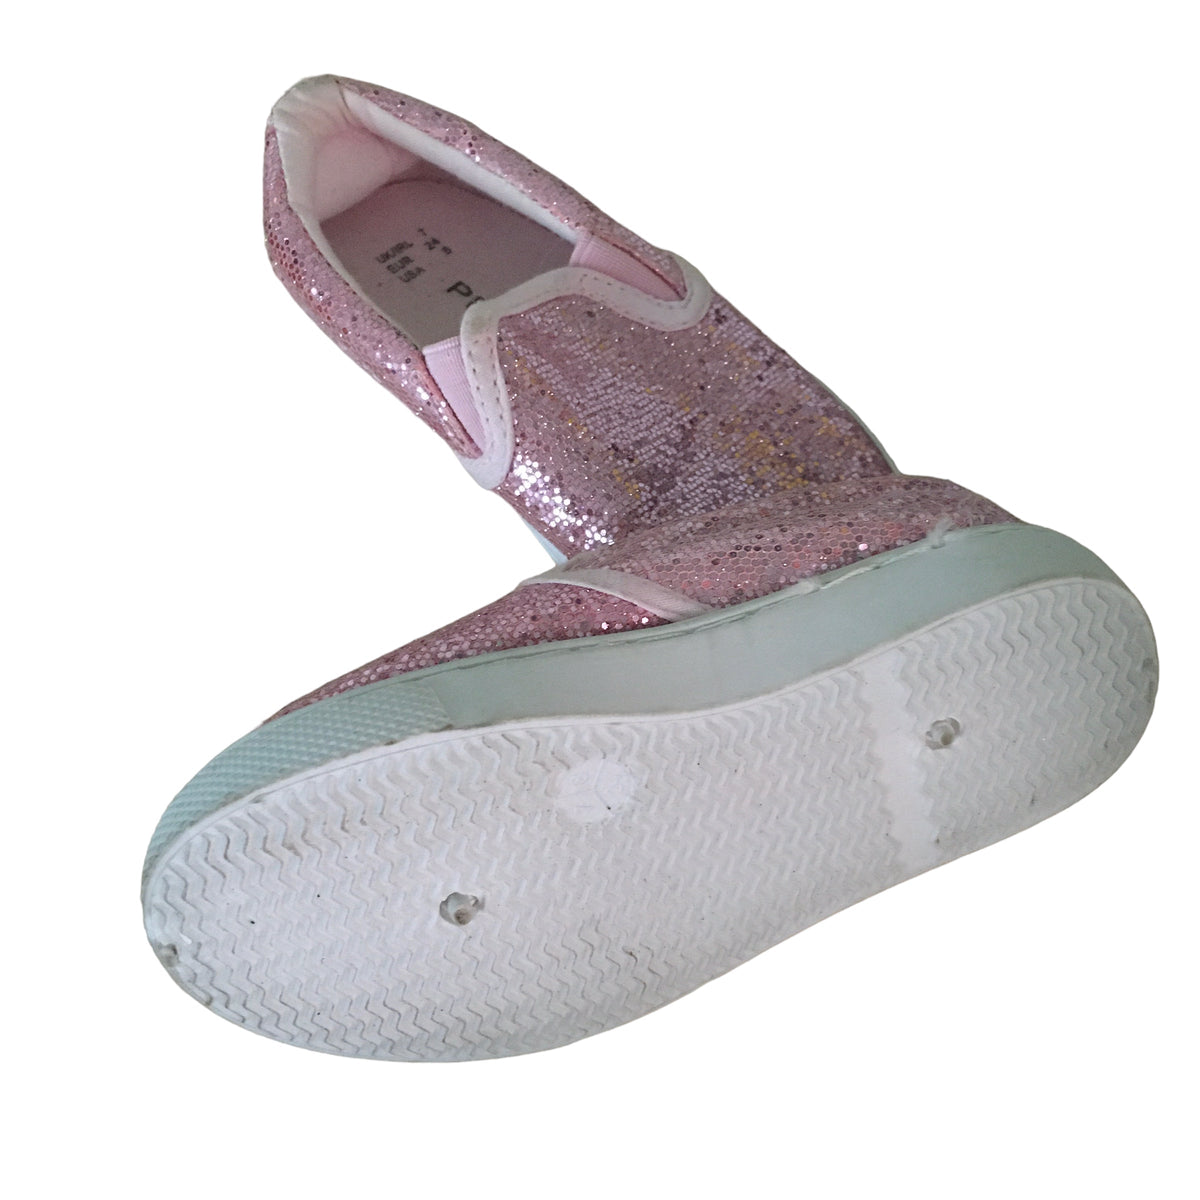 Primark Pink Glitzy Slip On Pumps Shoes - Girls Size Infant UK 7